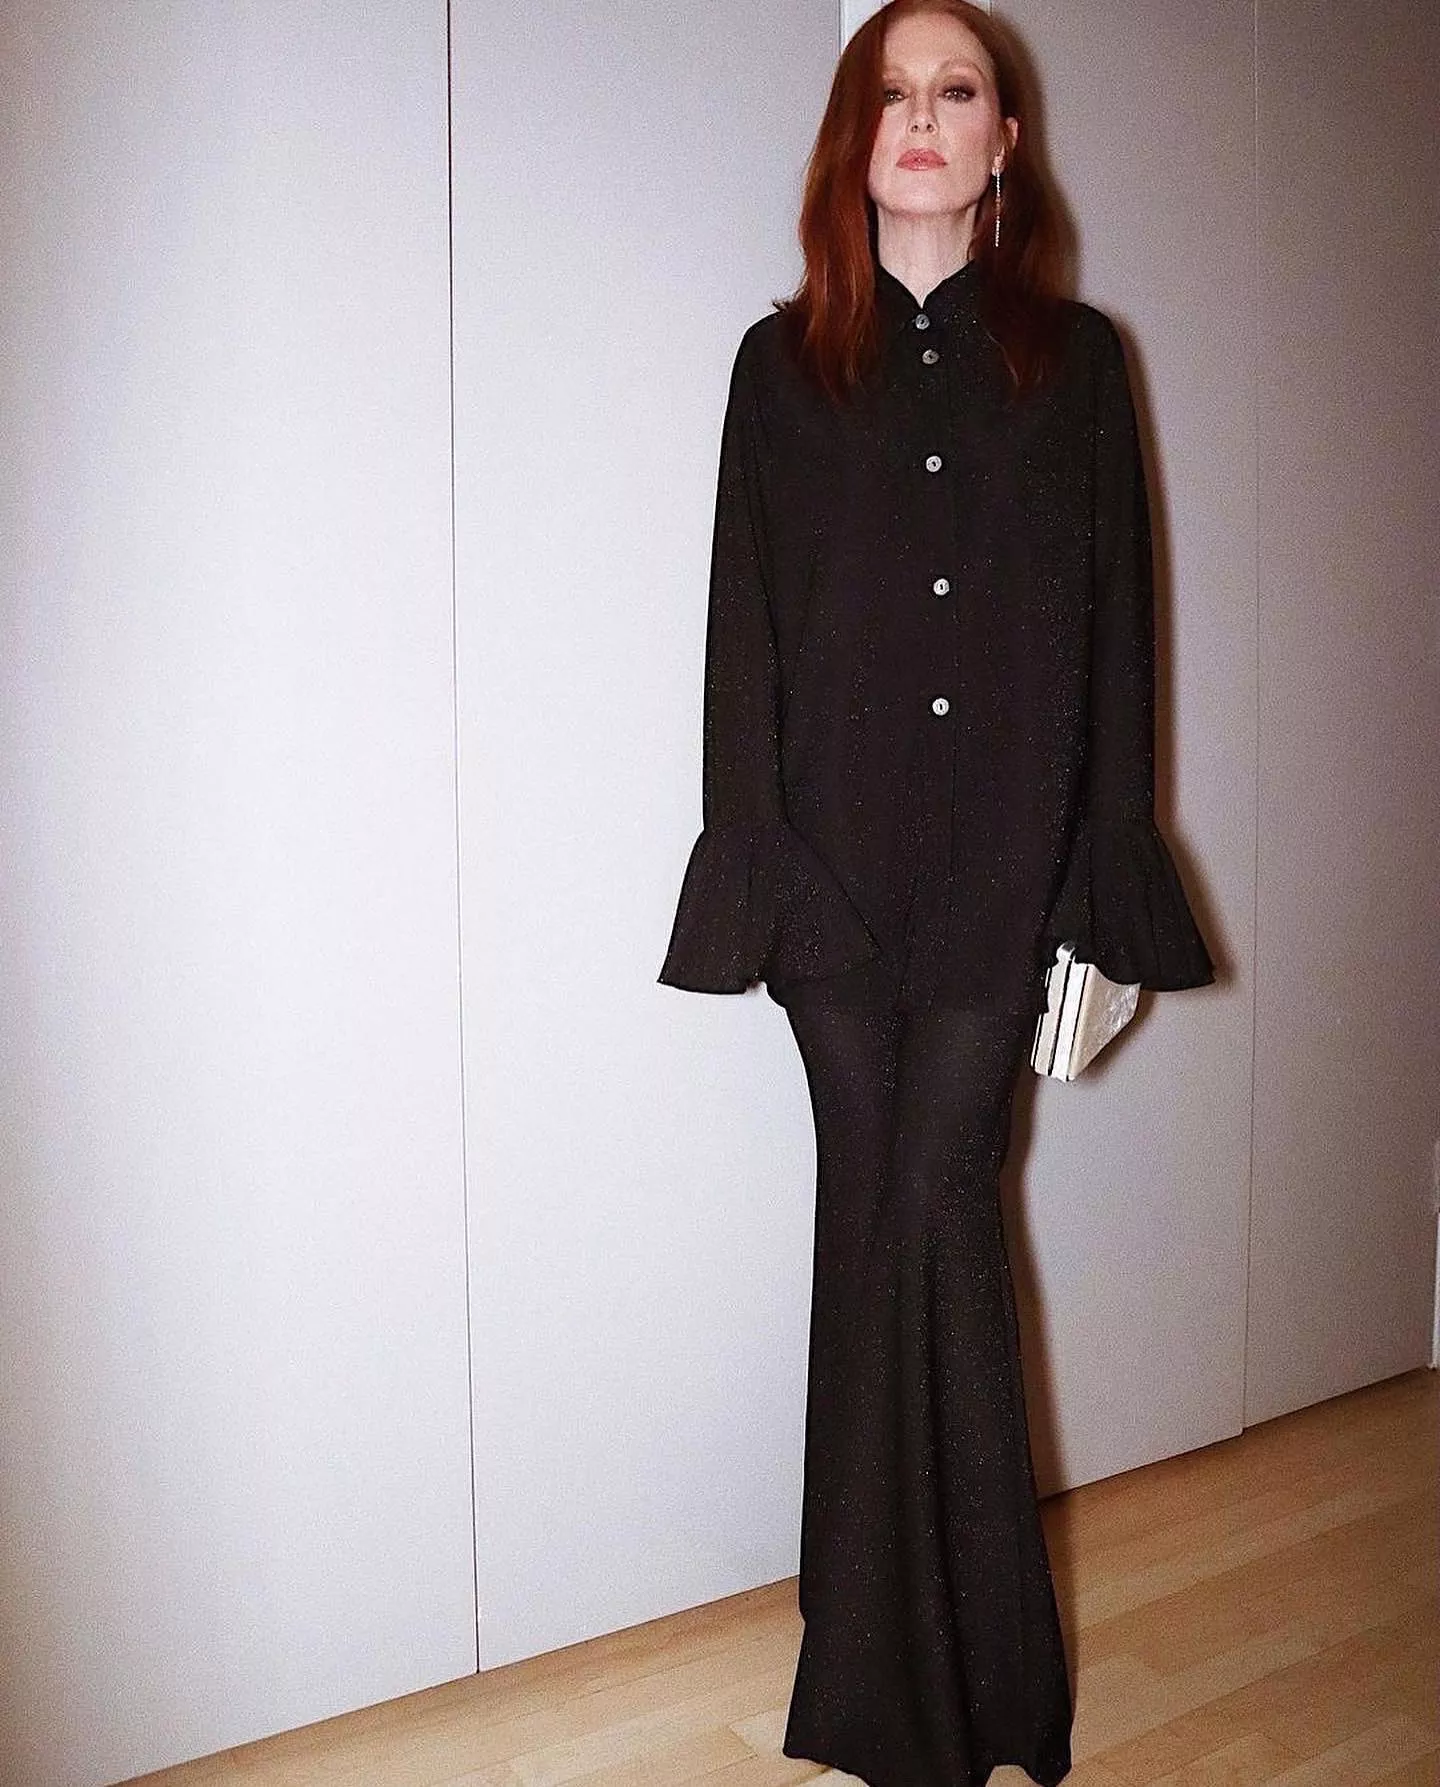 Джуліанна Мур вбрання від українського бренду Sleeper